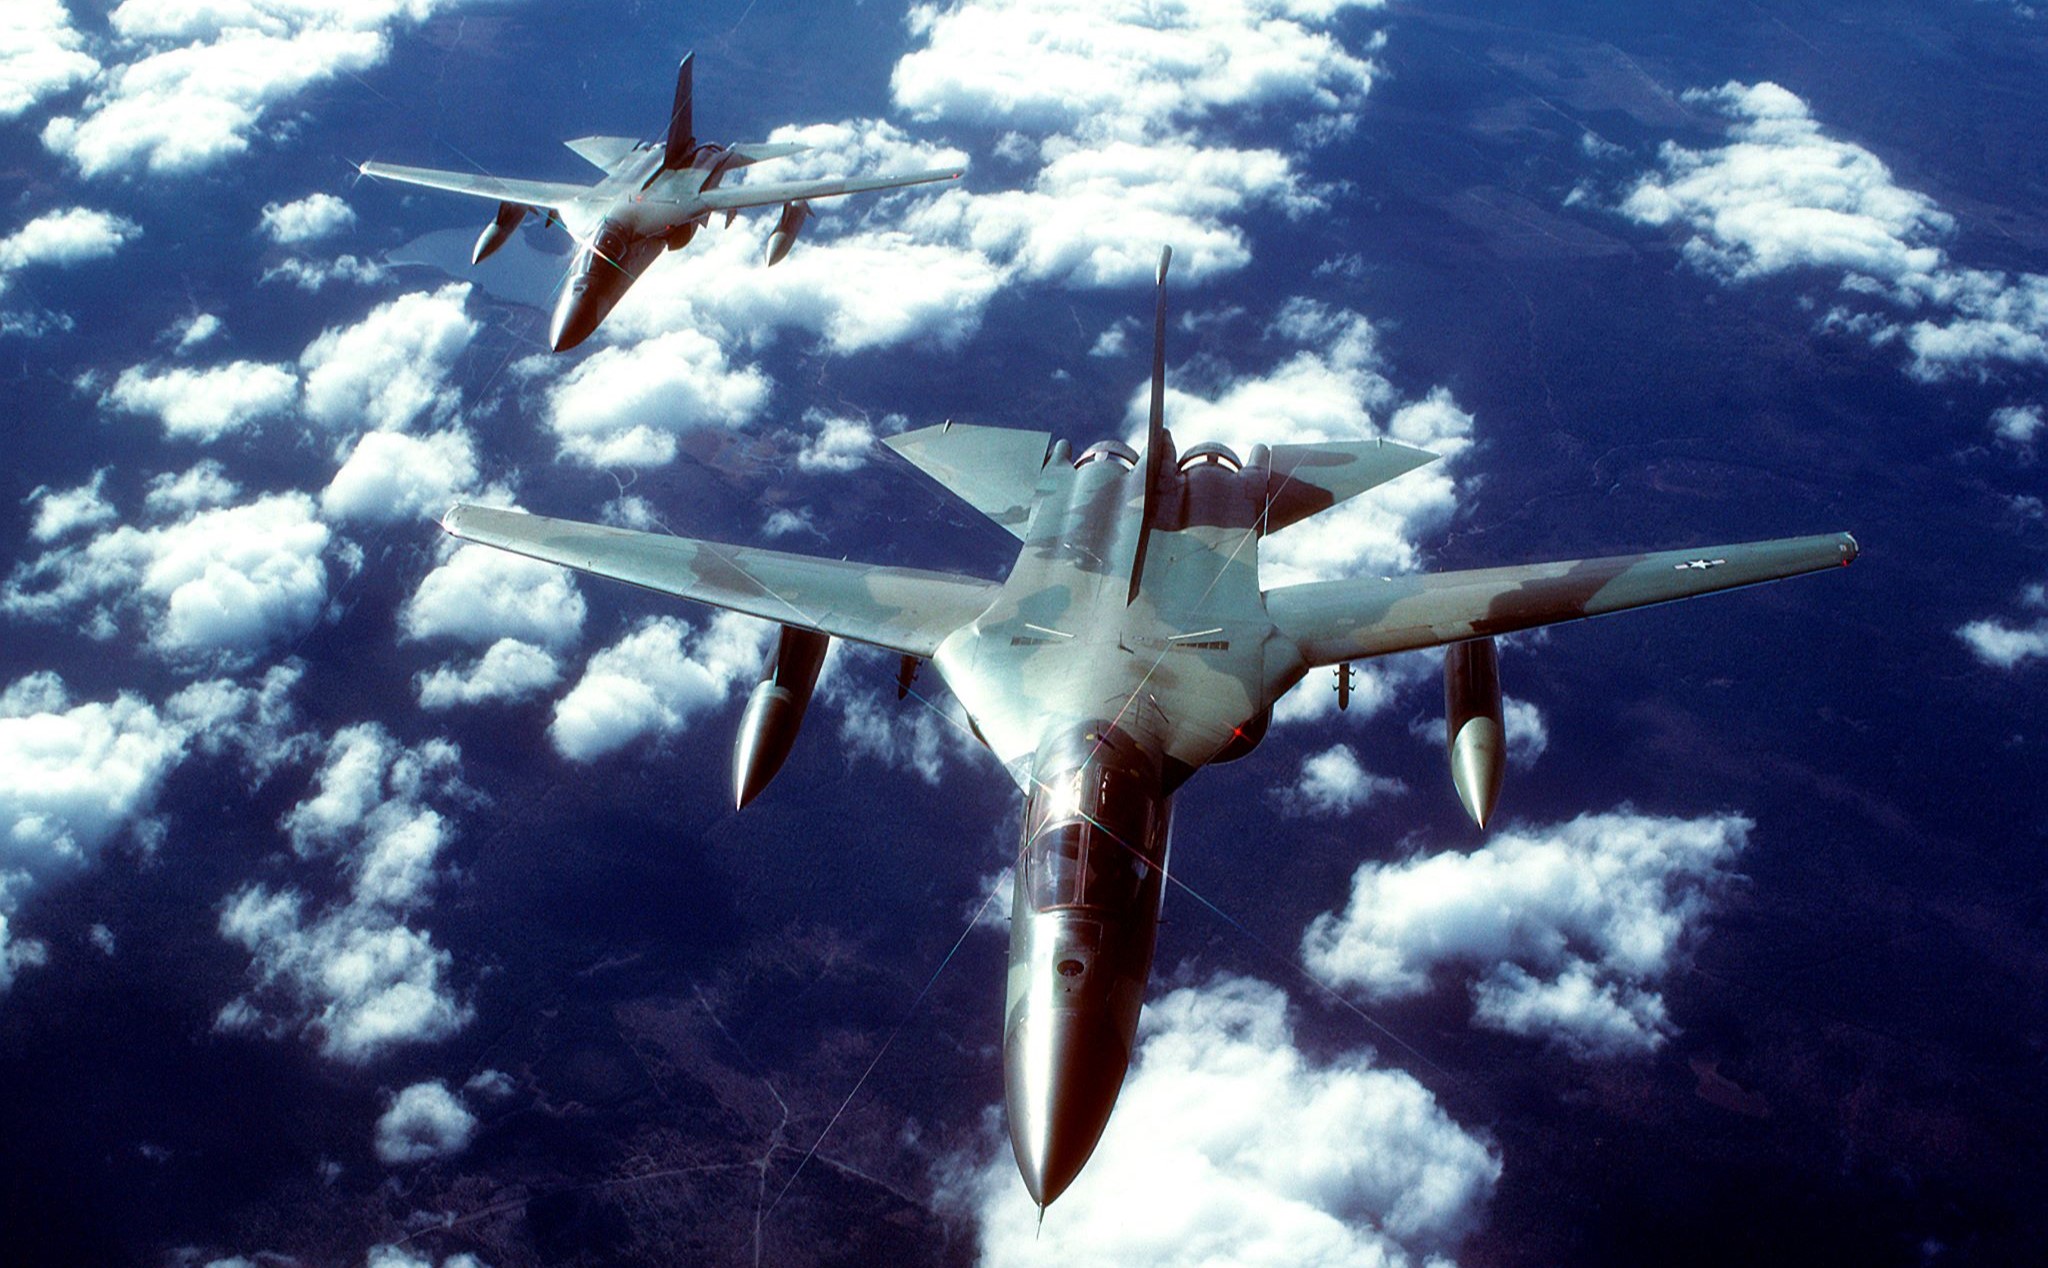 Vì sao chiến đấu cơ đa năng đầu tiên F-111 Aardvark bị dừng hoạt động?